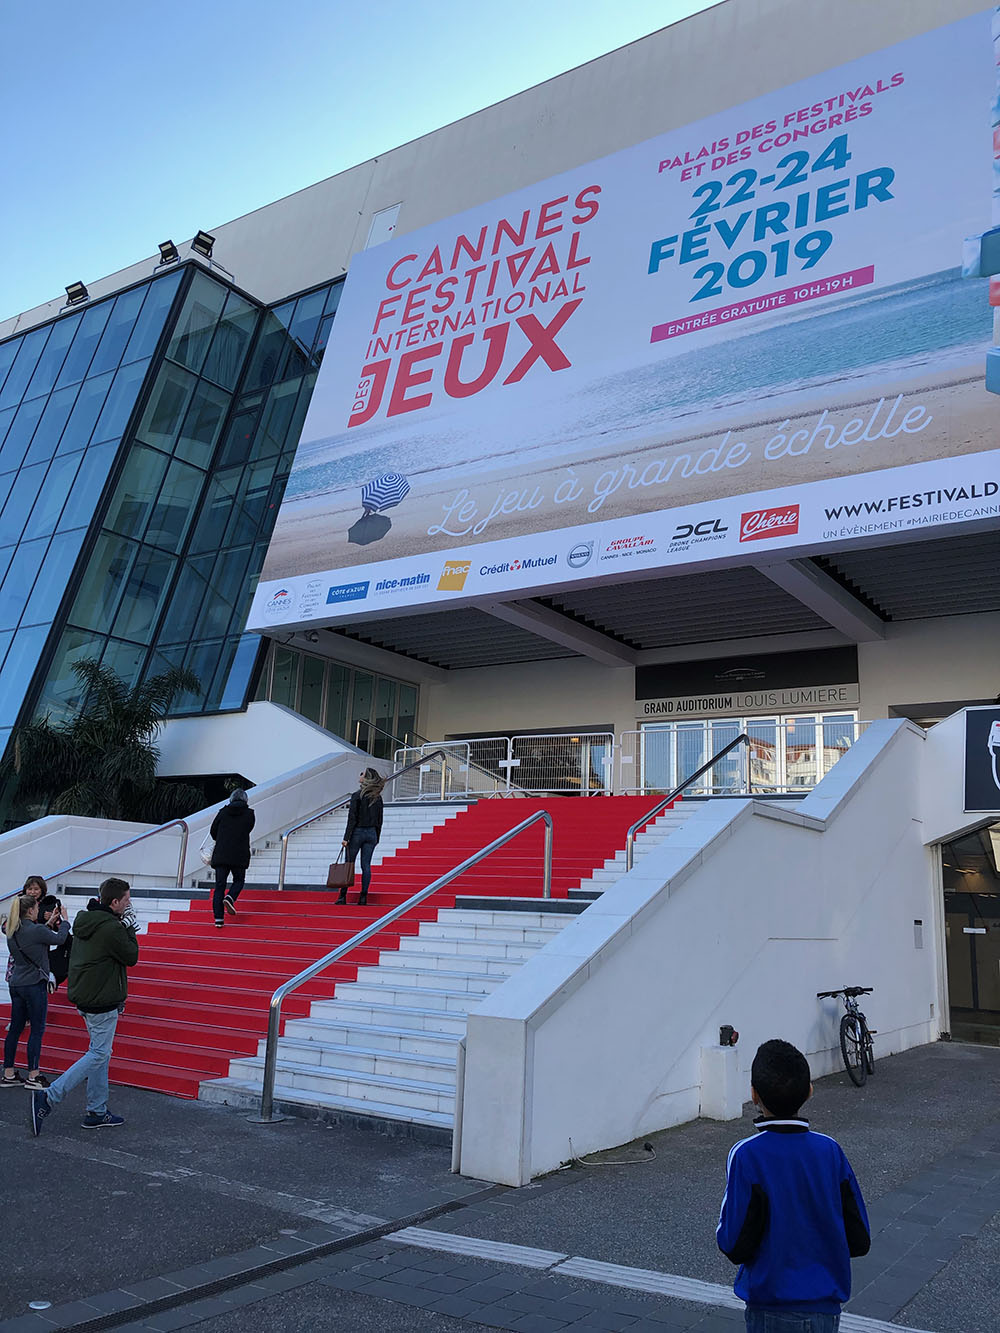 Cannes Festival des jeux 2019